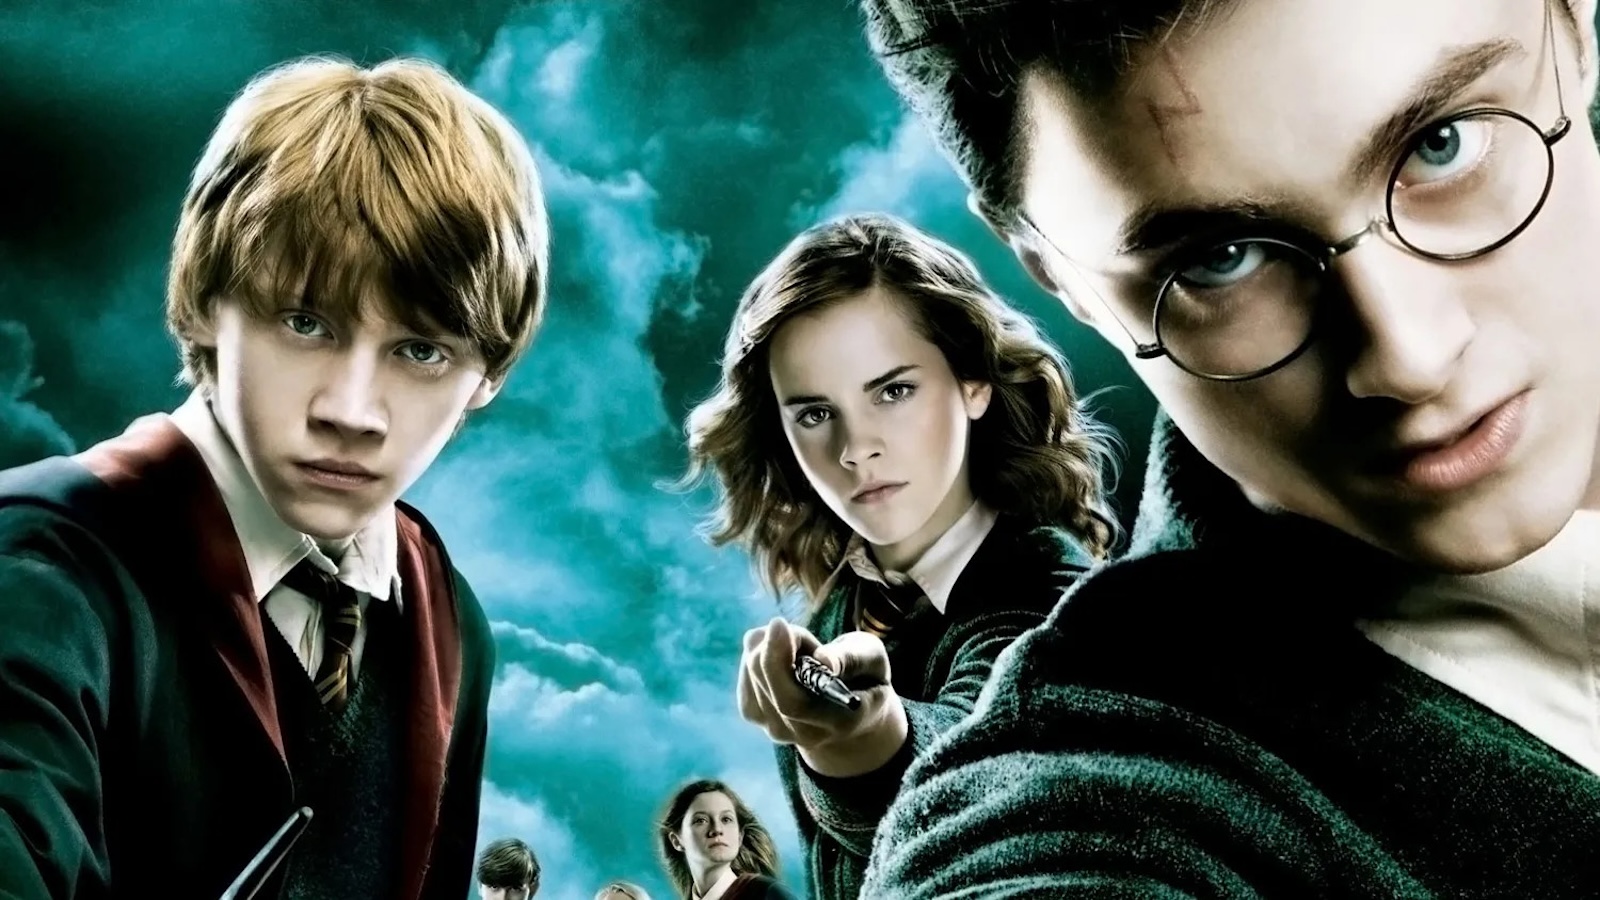 Harry Potter e l'Ordine della Fenice